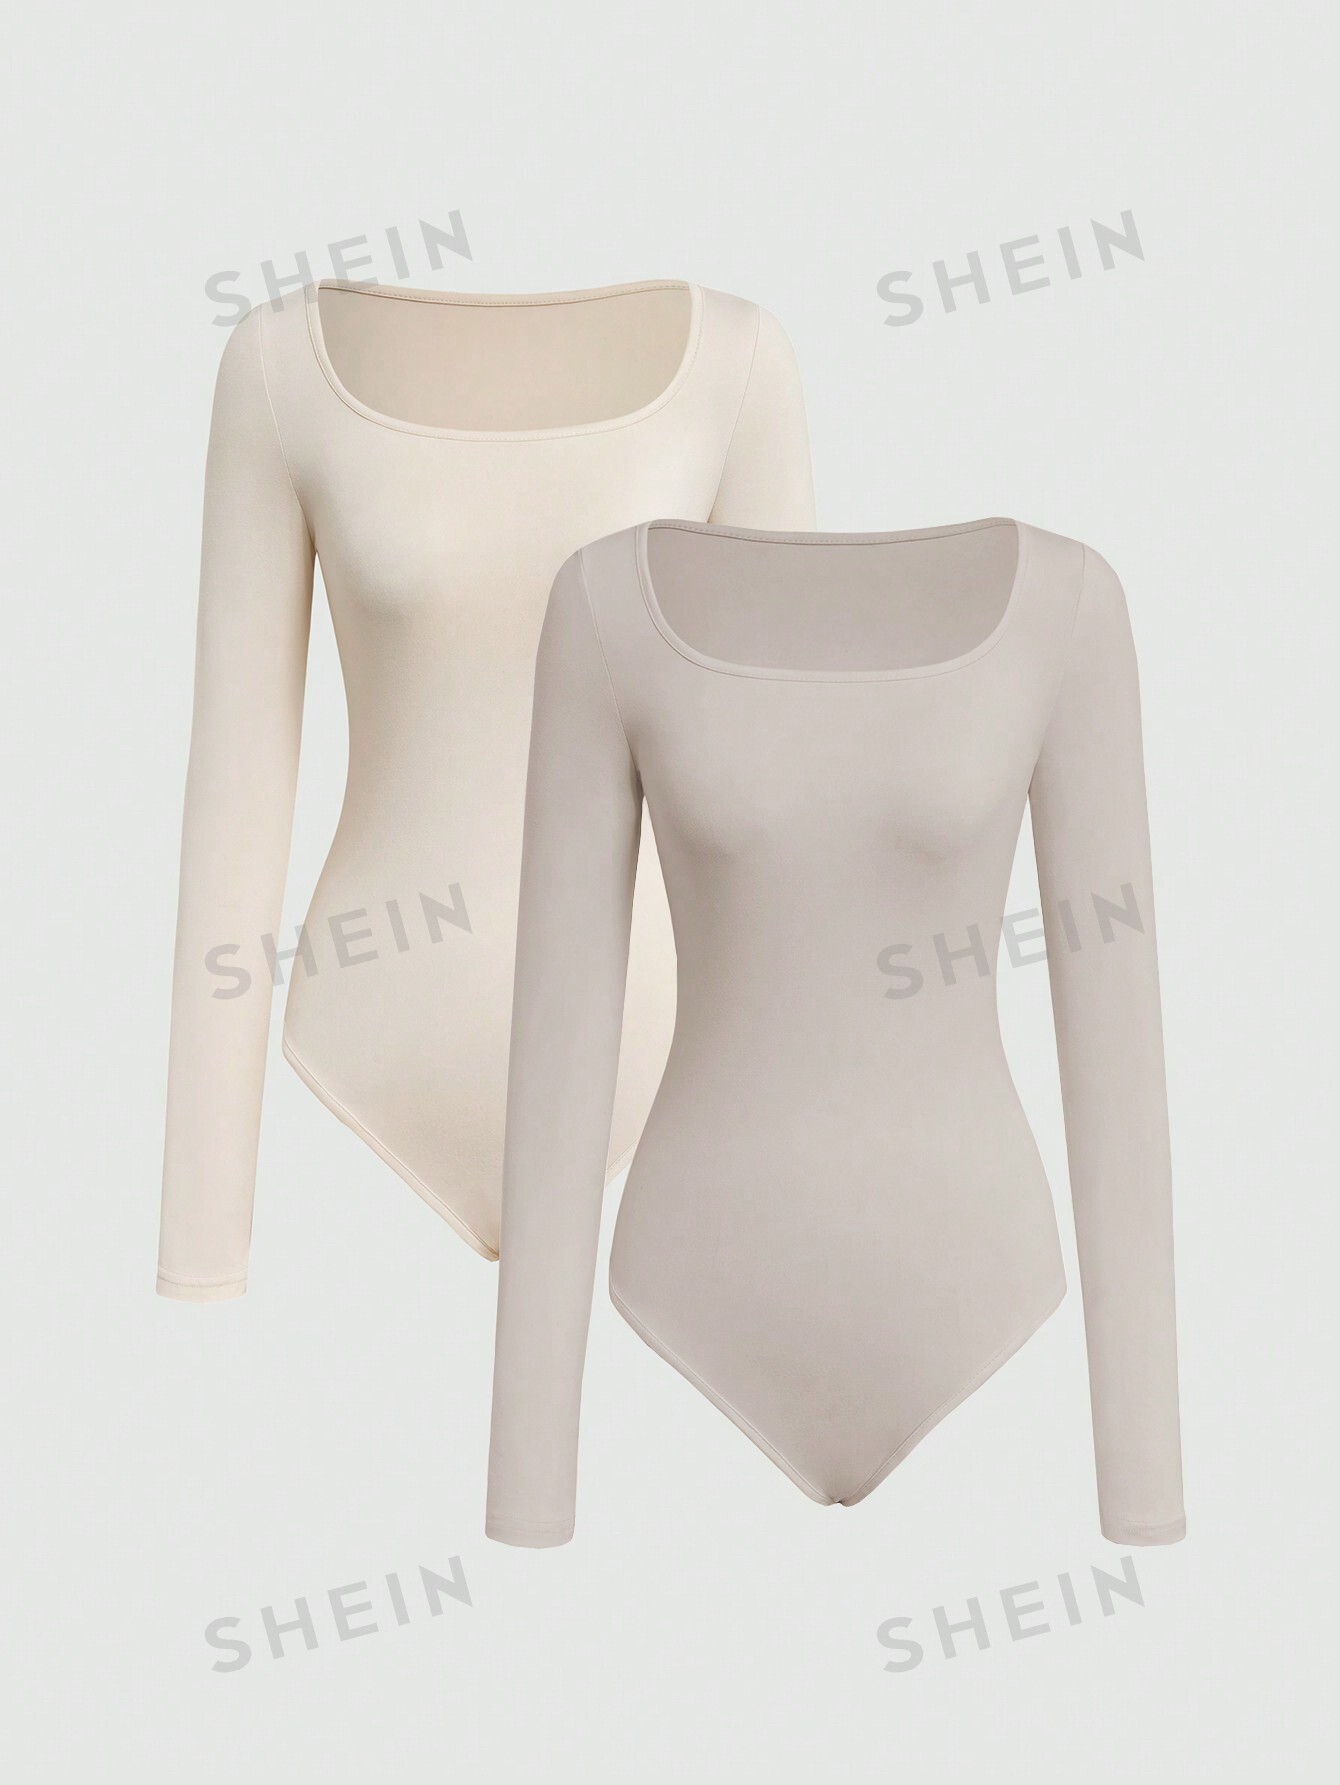 shein essnce трехцветное облегающее боди футболка с длинными рукавами многоцветный SHEIN MOD Женское однотонное боди с длинными рукавами, хаки